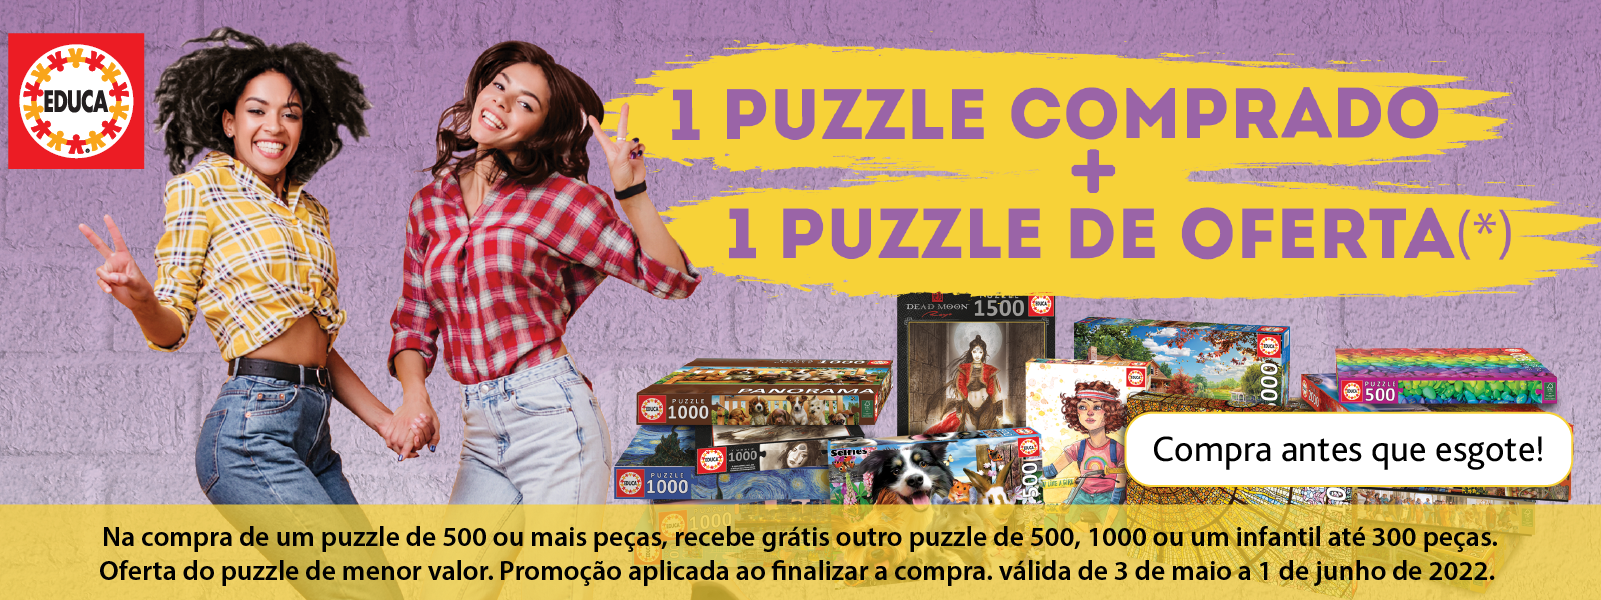 Comprar puzzles em promoção online